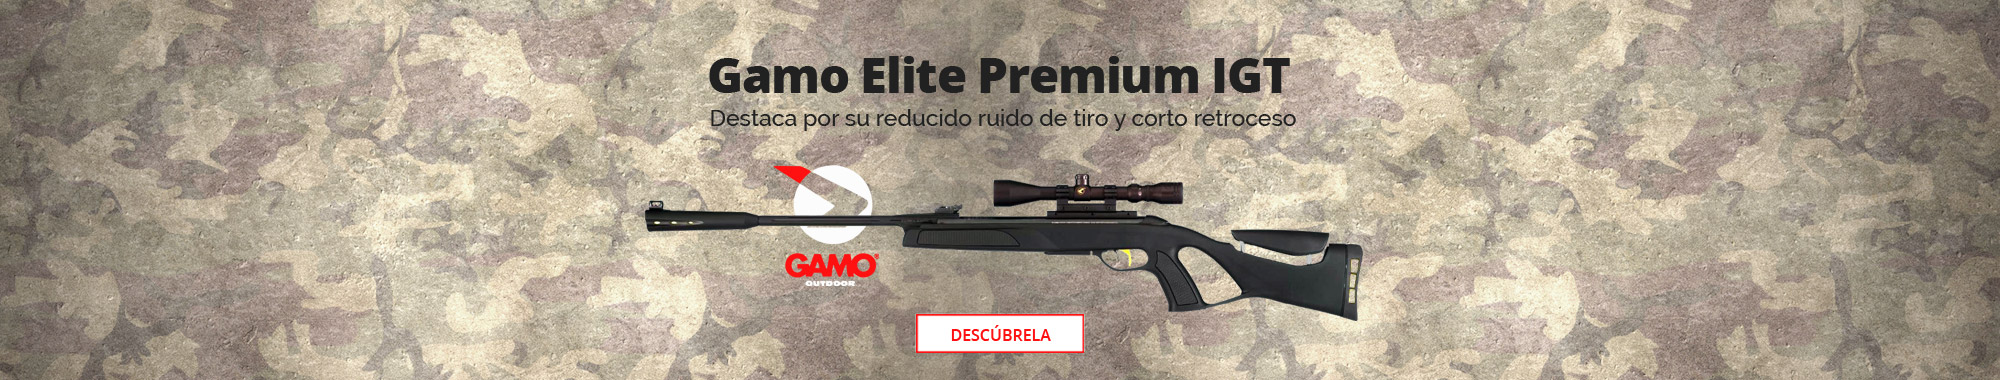 Gamo Elite Premium IGT 